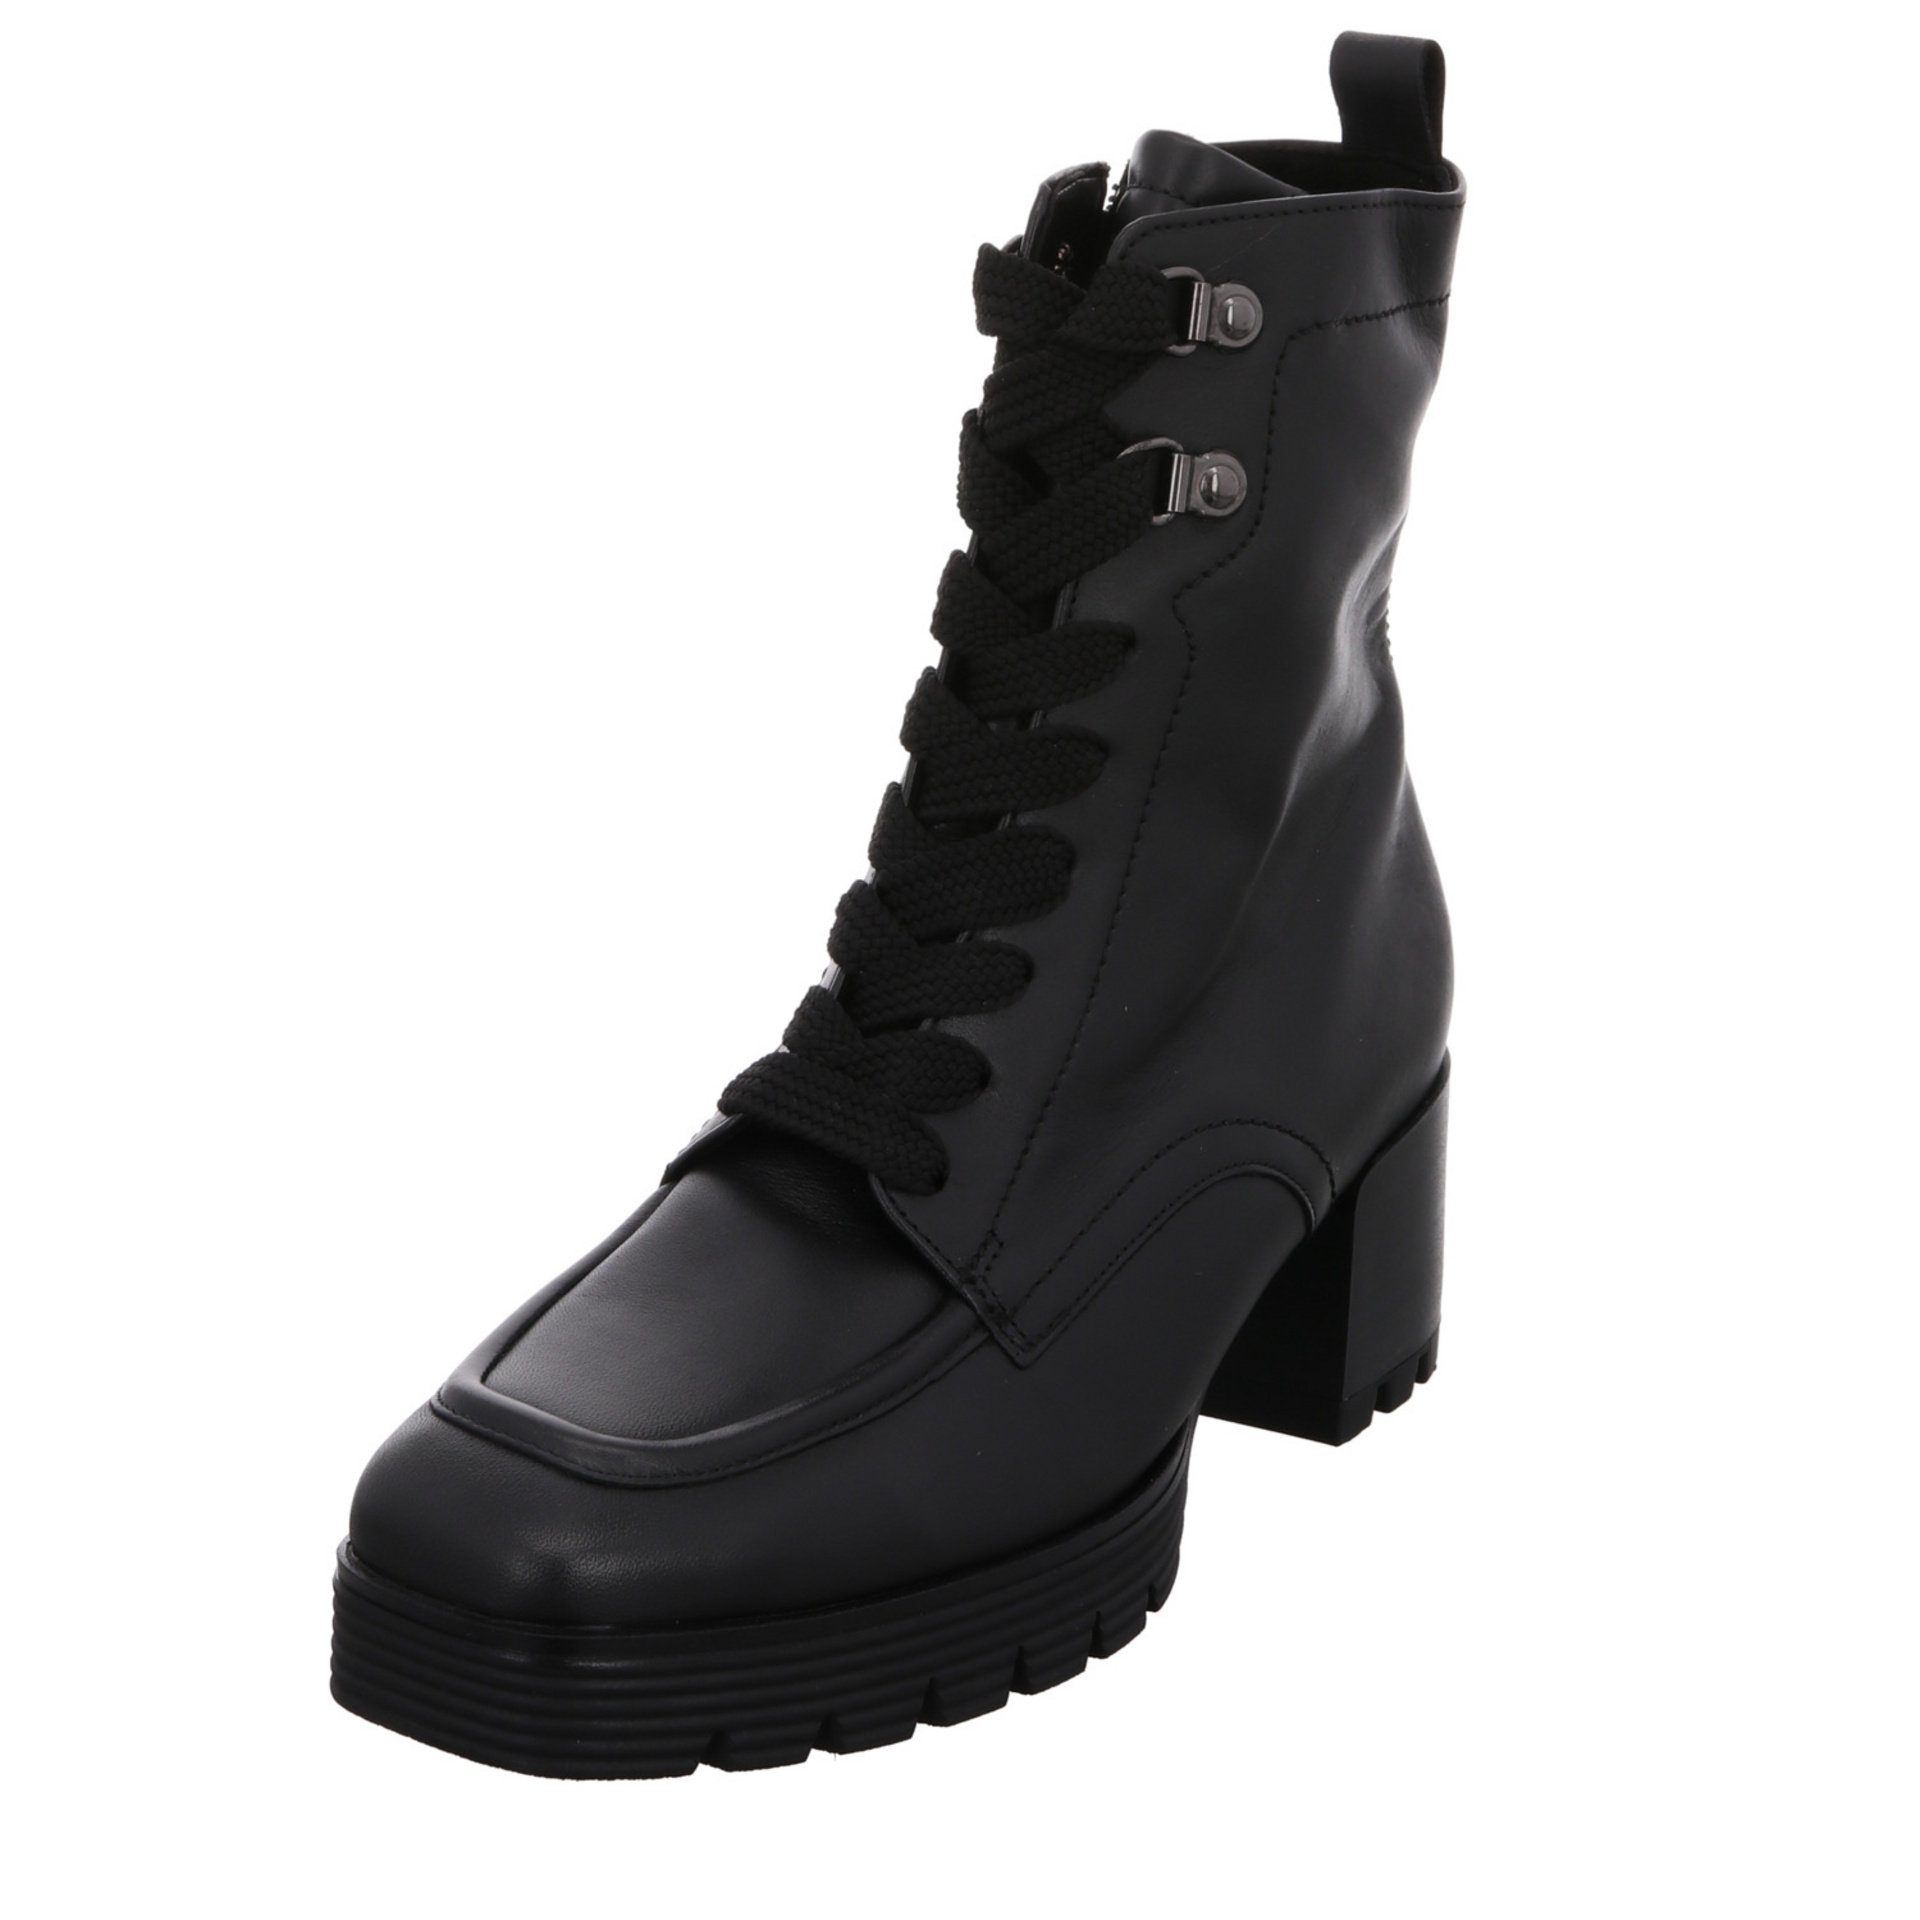 Gabor Schnürstiefelette Stiefeletten Schnürstiefelette (Micro) schwarz Damen Schuhe Veloursleder